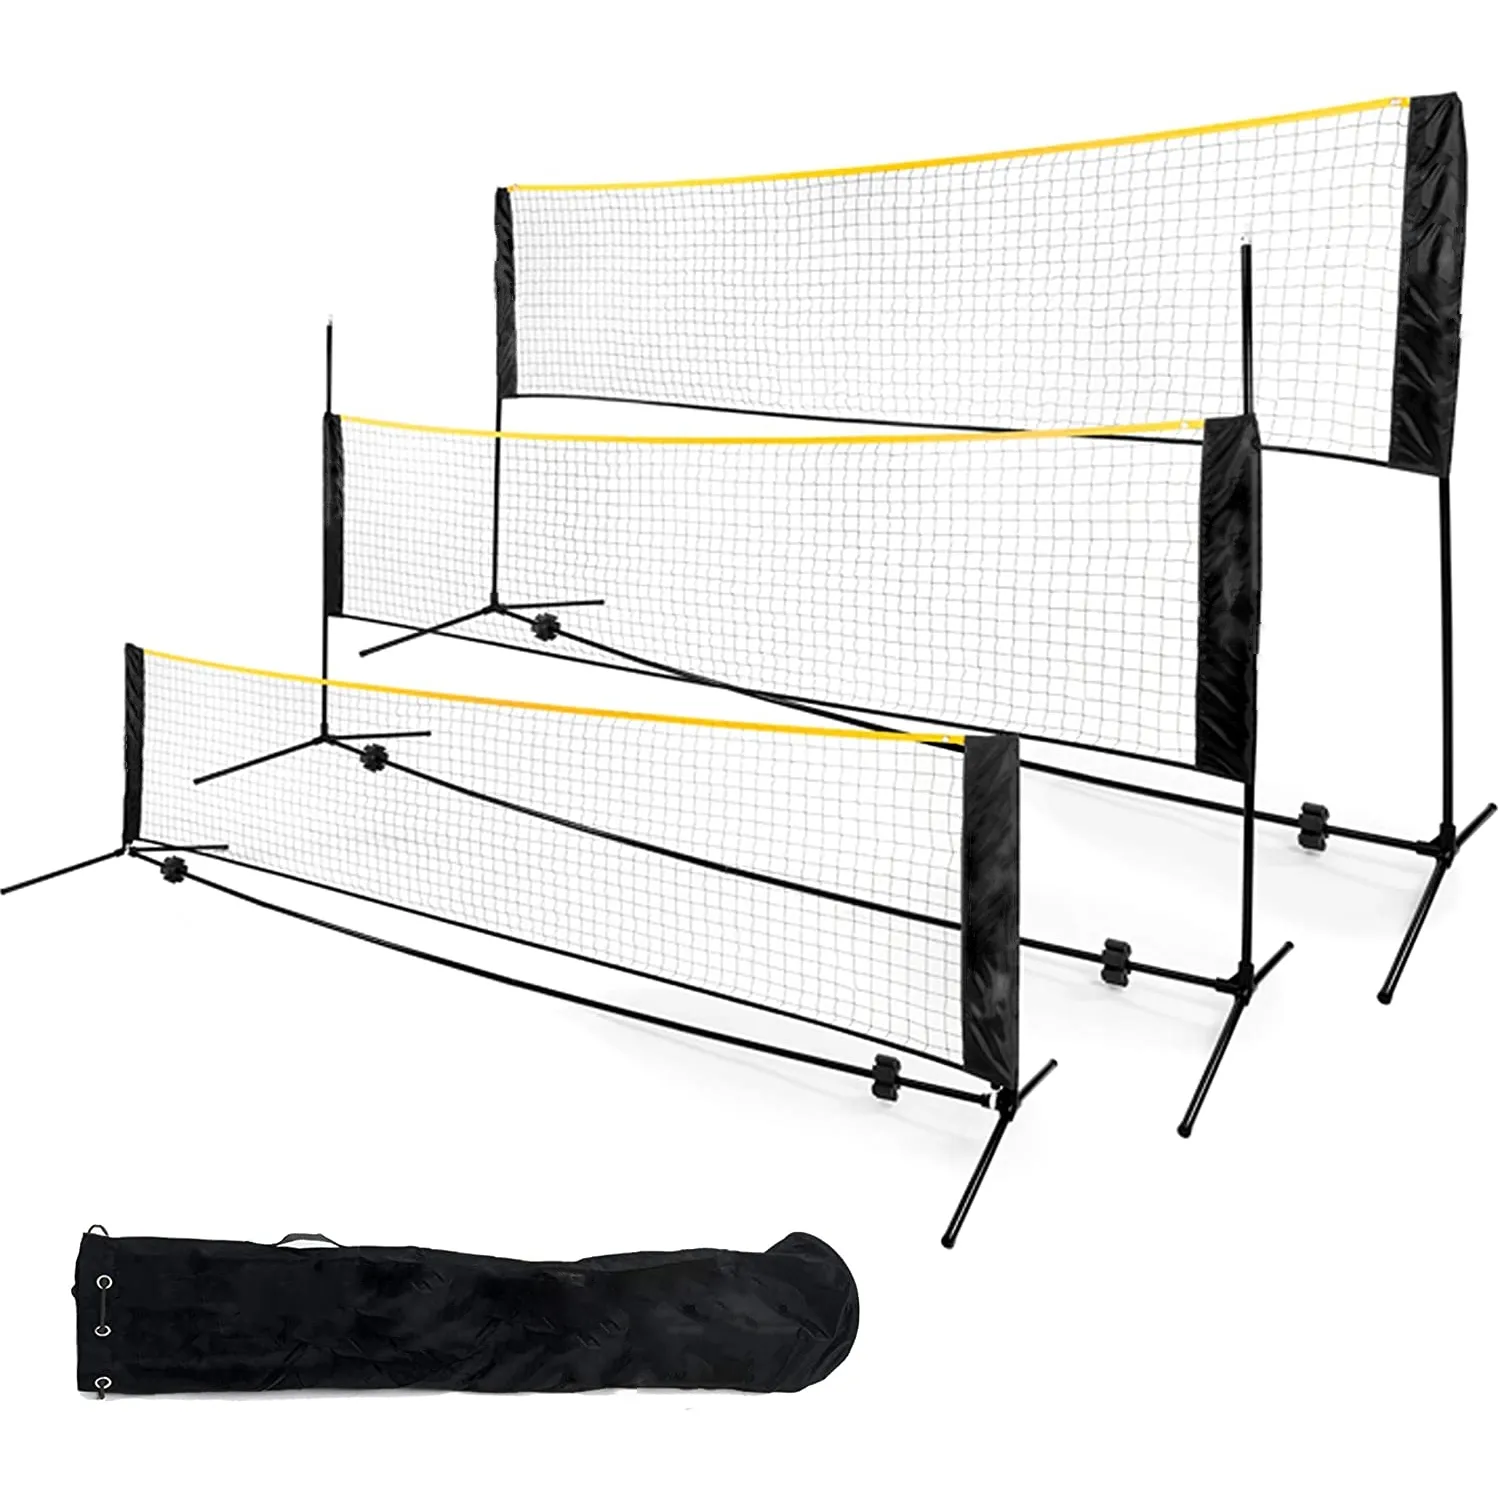 Badminton Pickle ball Net-Höhen verstellbares tragbares Netz für Junior Tennis, Kinder Volleyball & Fußball und Hinterhofs piele-Einfach